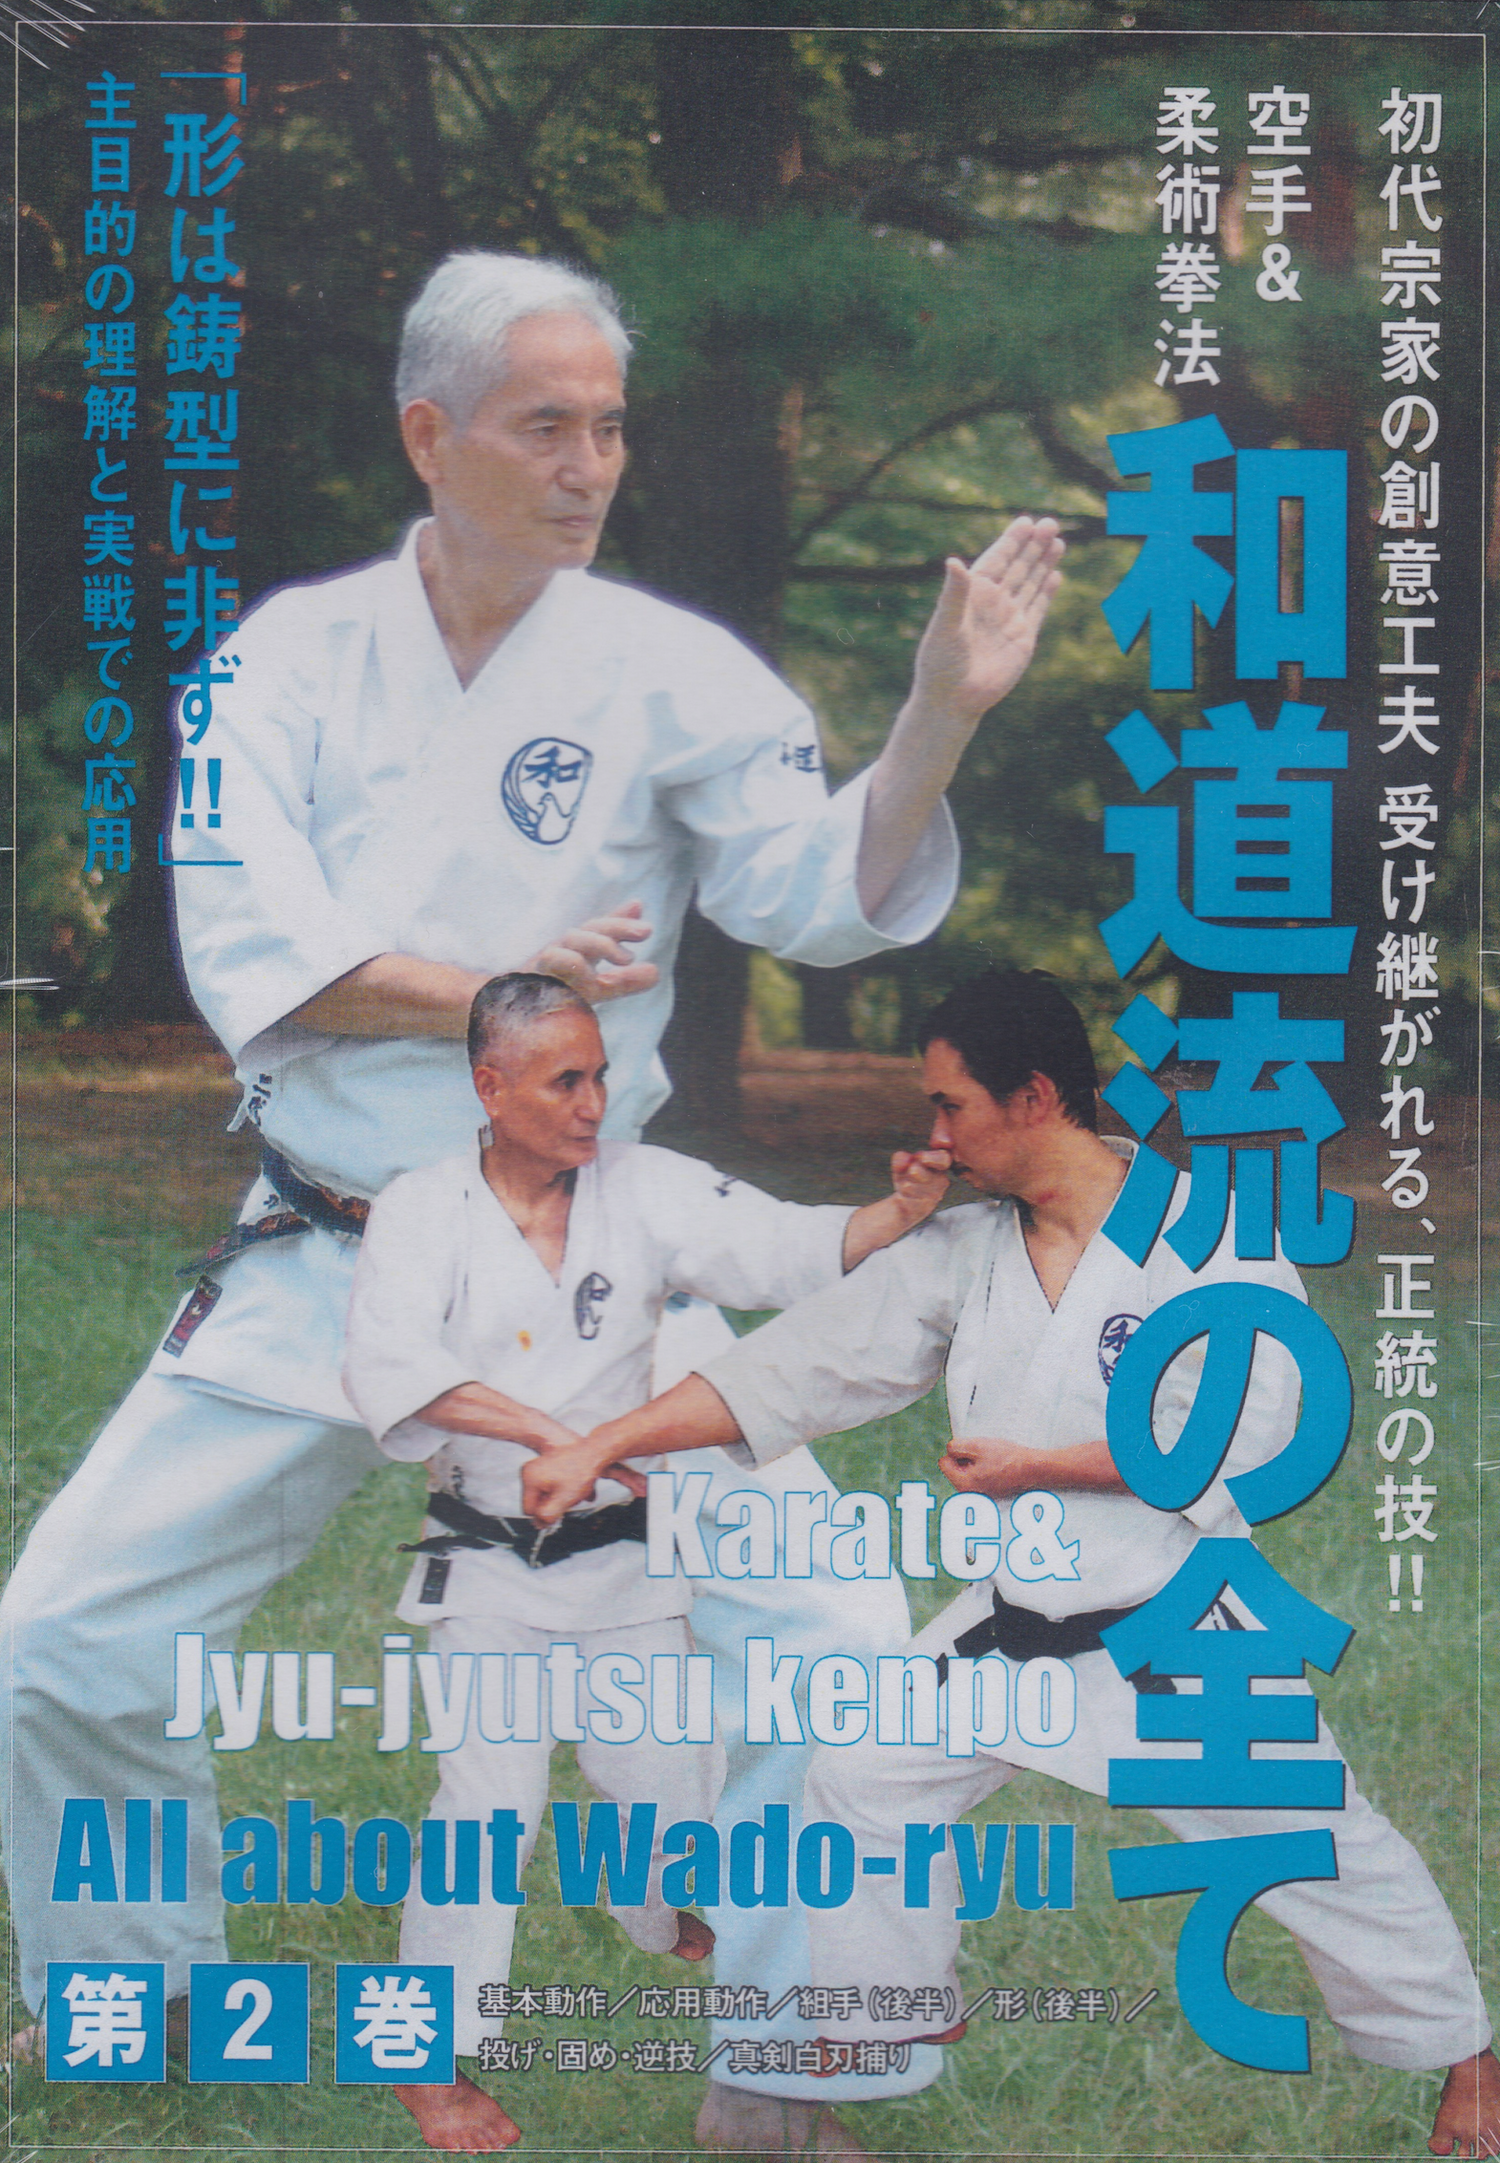 All Wado Ryu DVD 2: Karate & Jujutsu Kenpo by Jiro Otsuka